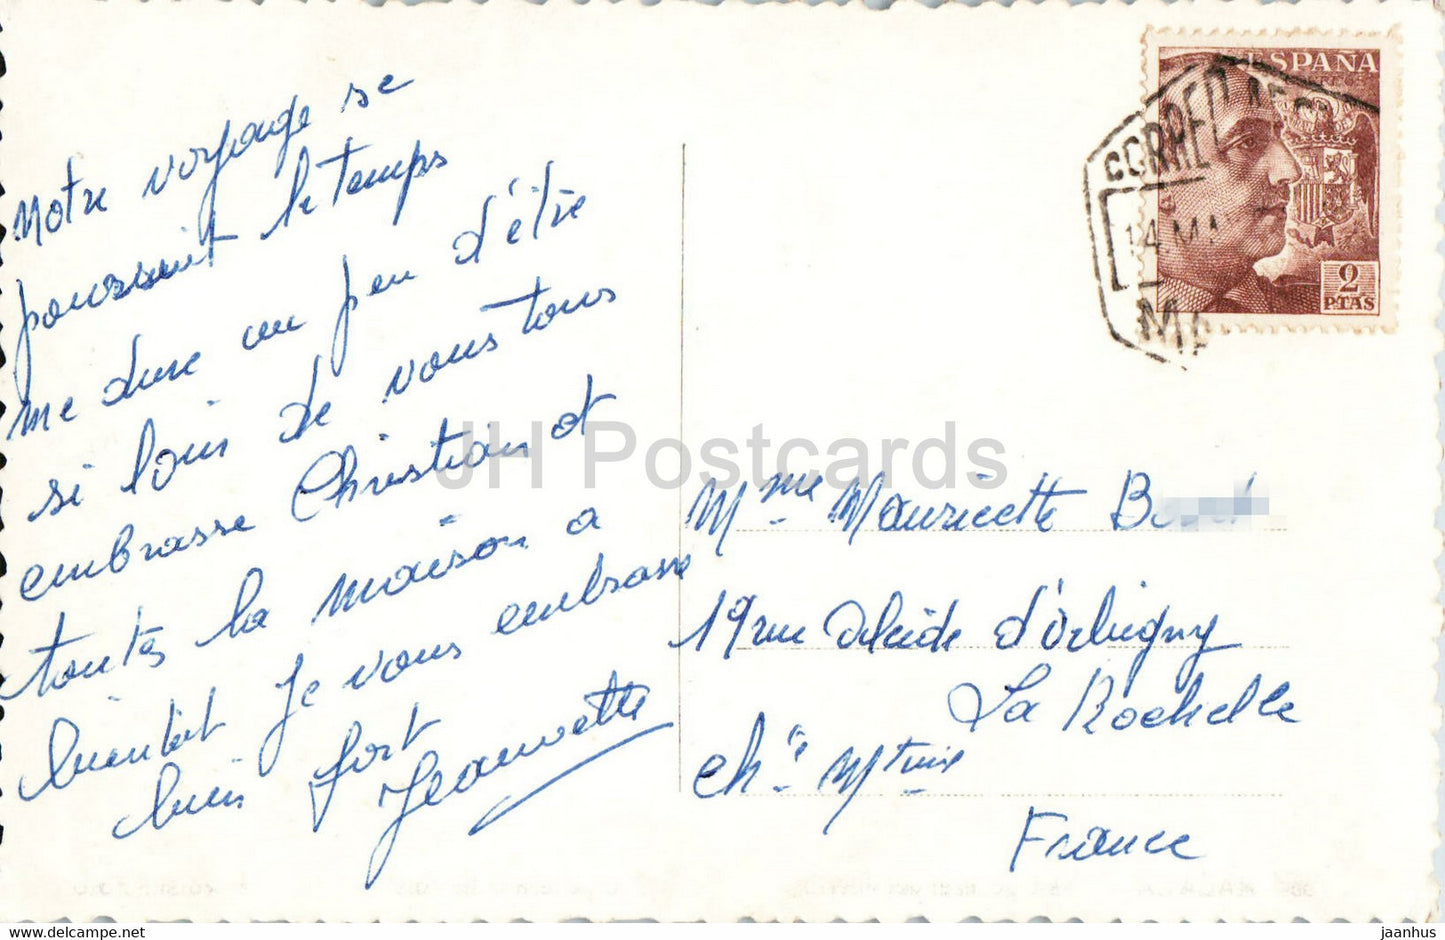 Malaga - Vista general del Puerto - Vue générale du Port - 354 - carte postale ancienne - Espagne - utilisé